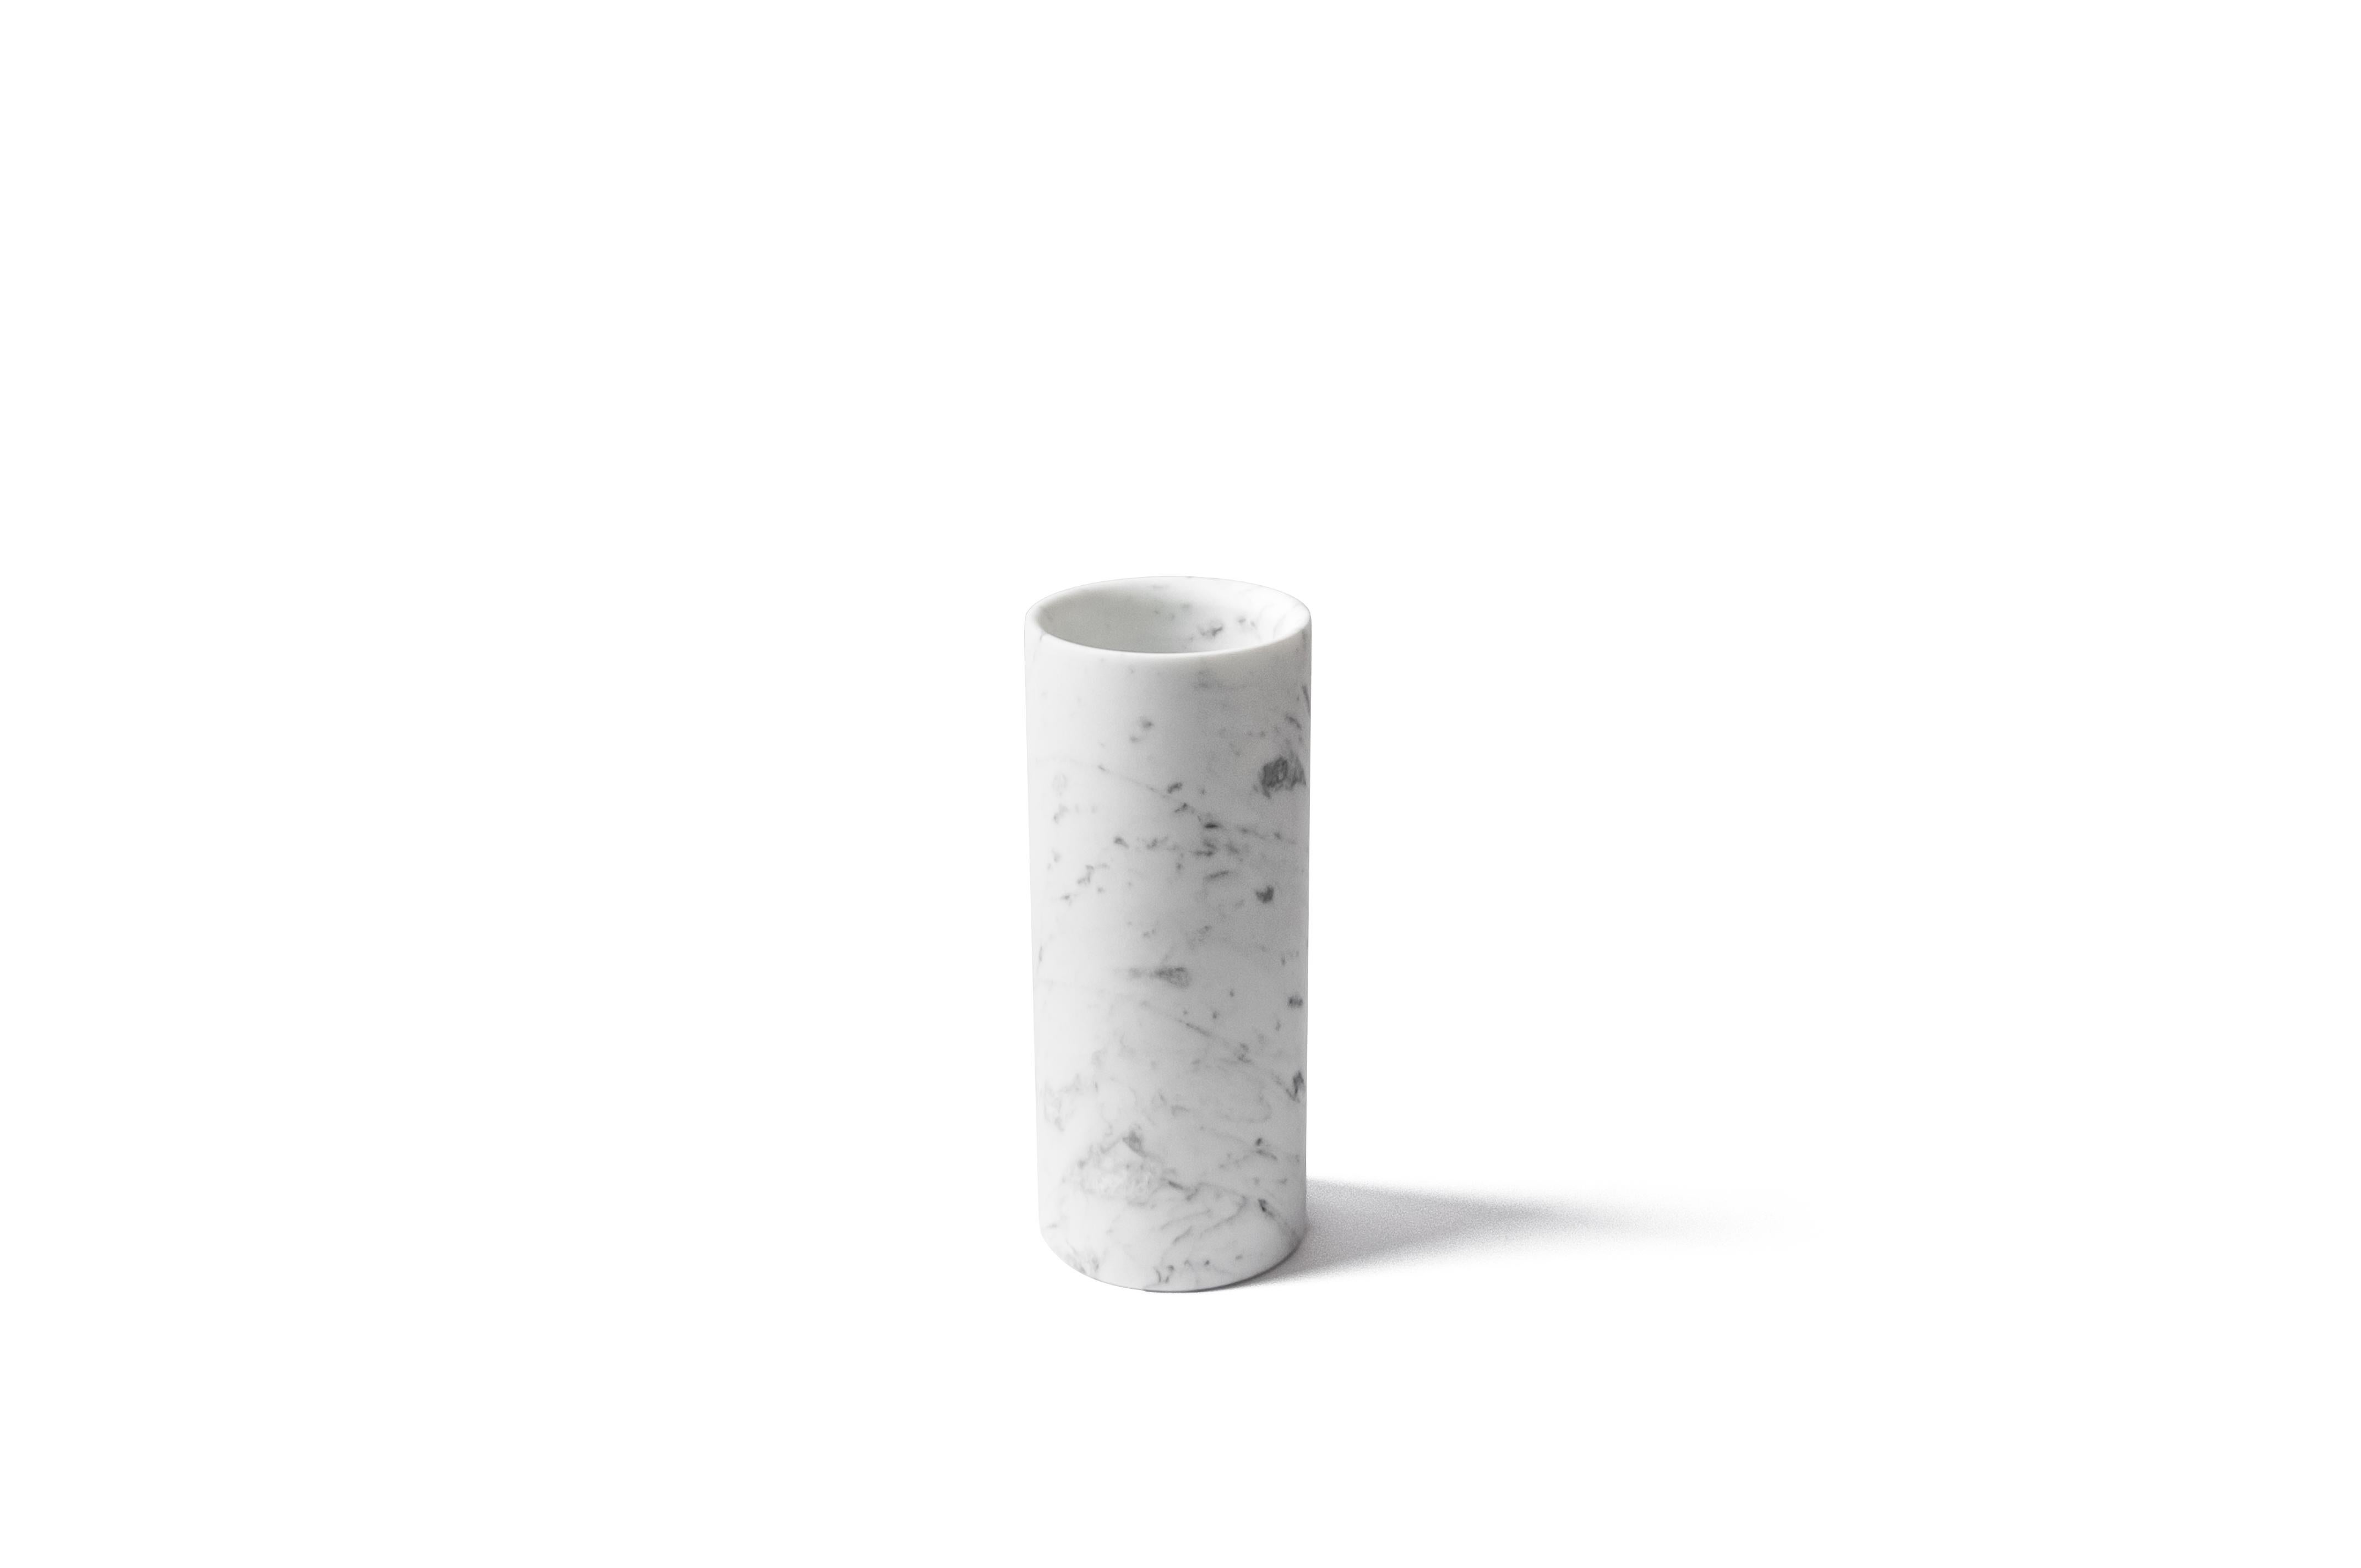 Zylindrische Vase aus satiniertem weißem Carrara-Marmor, hergestellt in Italien, Carrara.
Jedes Stück ist in gewisser Weise einzigartig (da jeder Marmorblock unterschiedliche Maserungen und Schattierungen aufweist) und wird in Italien